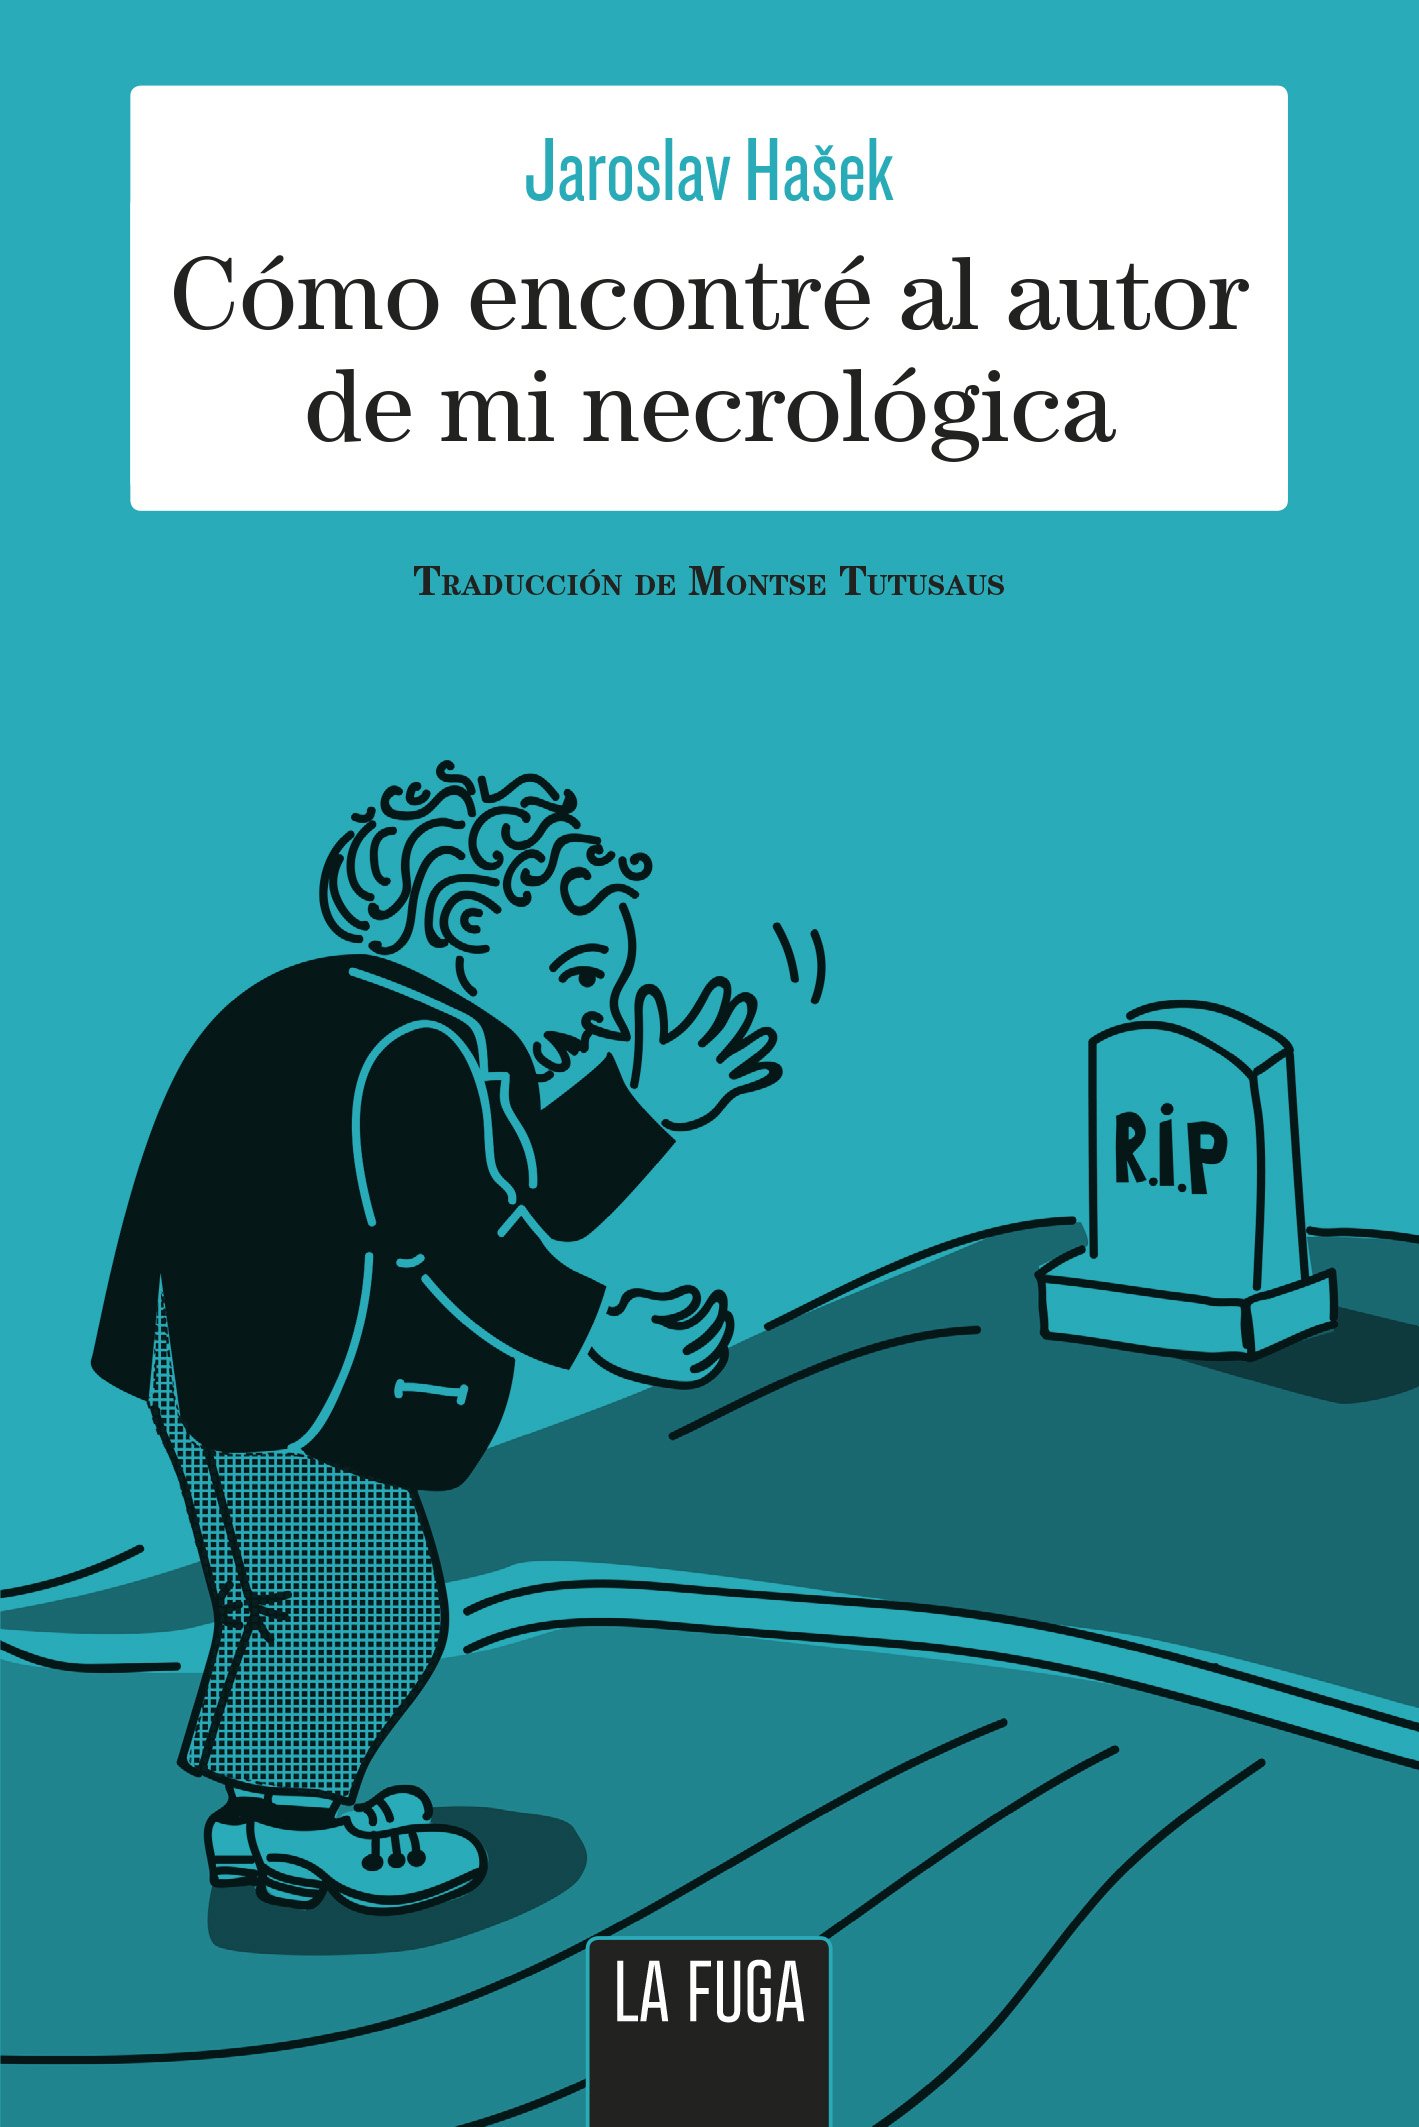 J. Hasek, 'Cómo encontré al autor de mi necrológica'. La Fuga Ed., 180 p., 16,50 €.